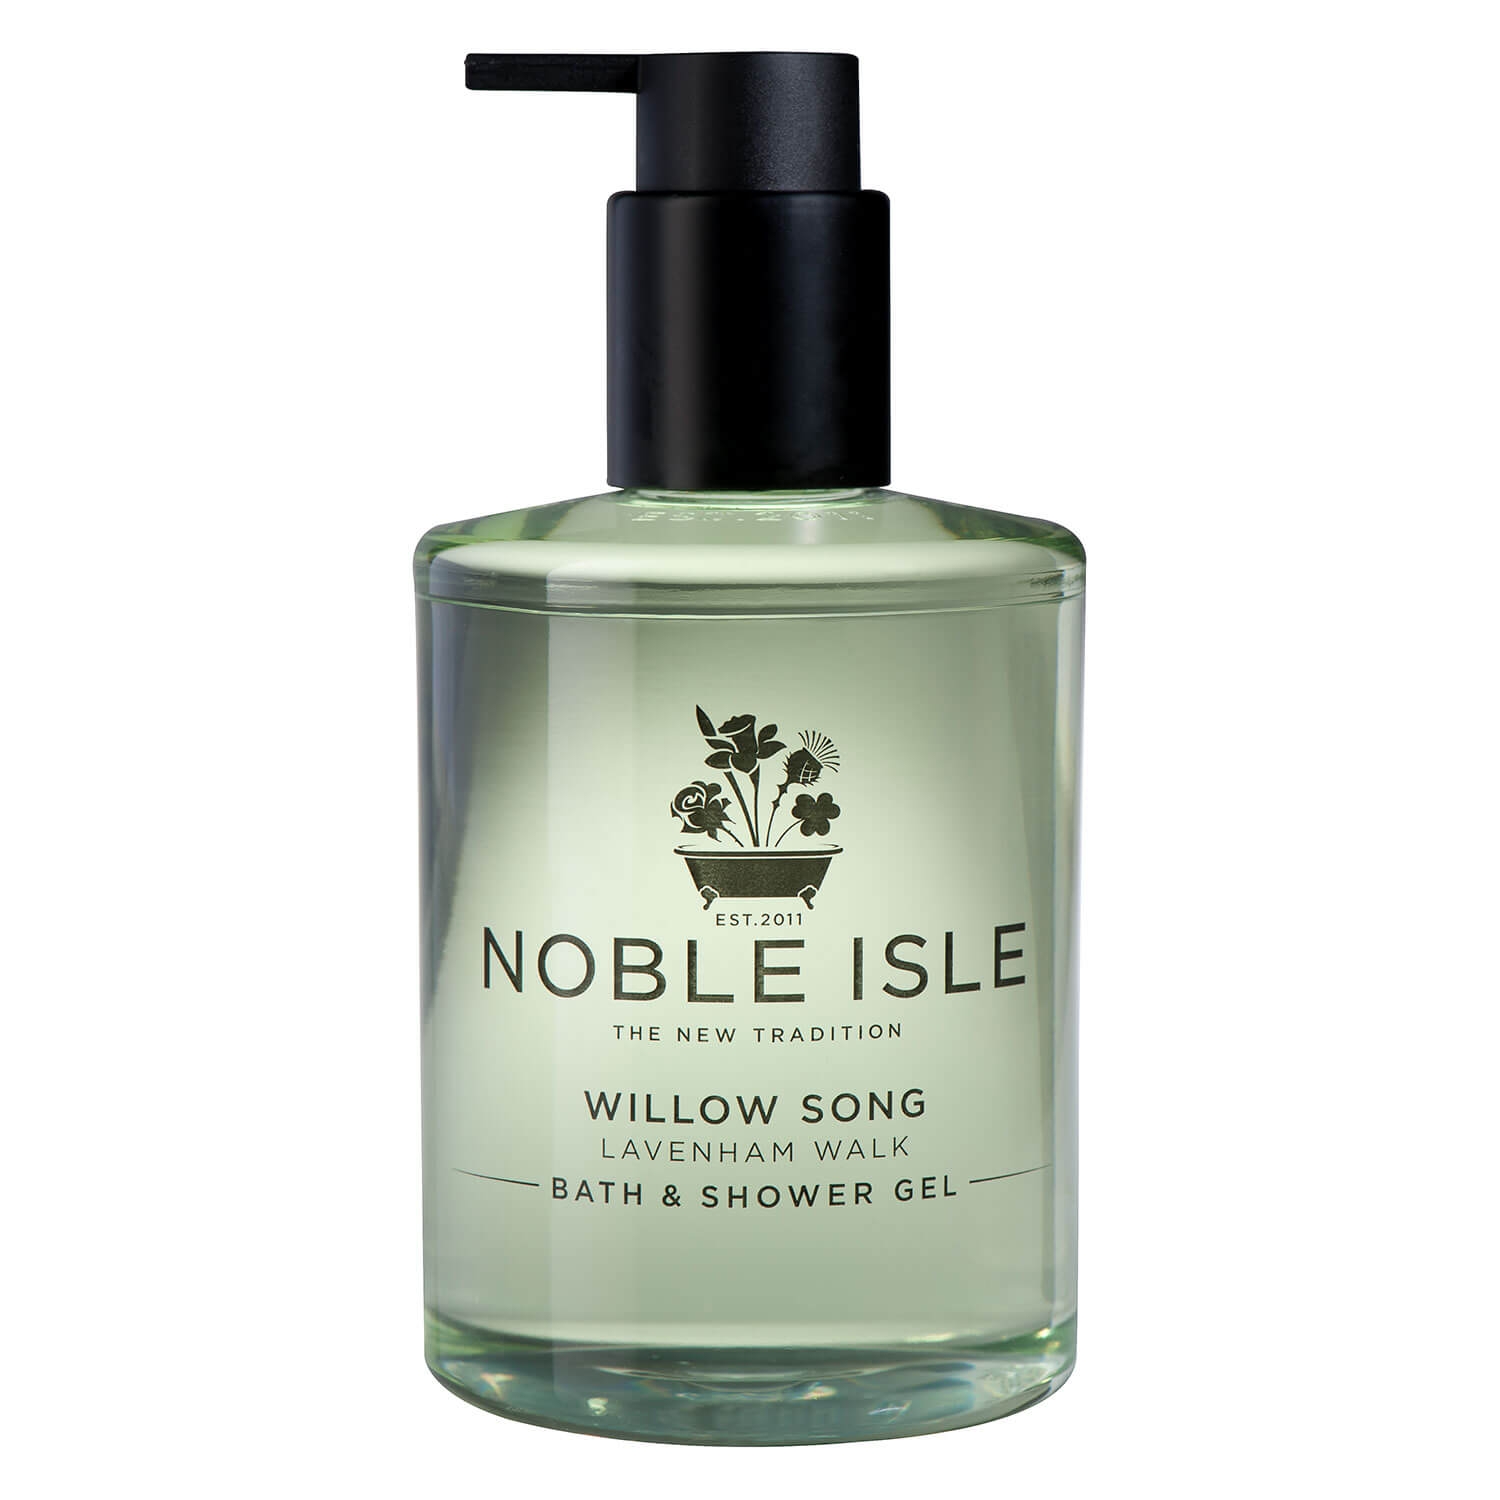 Produktbild von Noble Isle - Willow Song Bath & Shower Gel